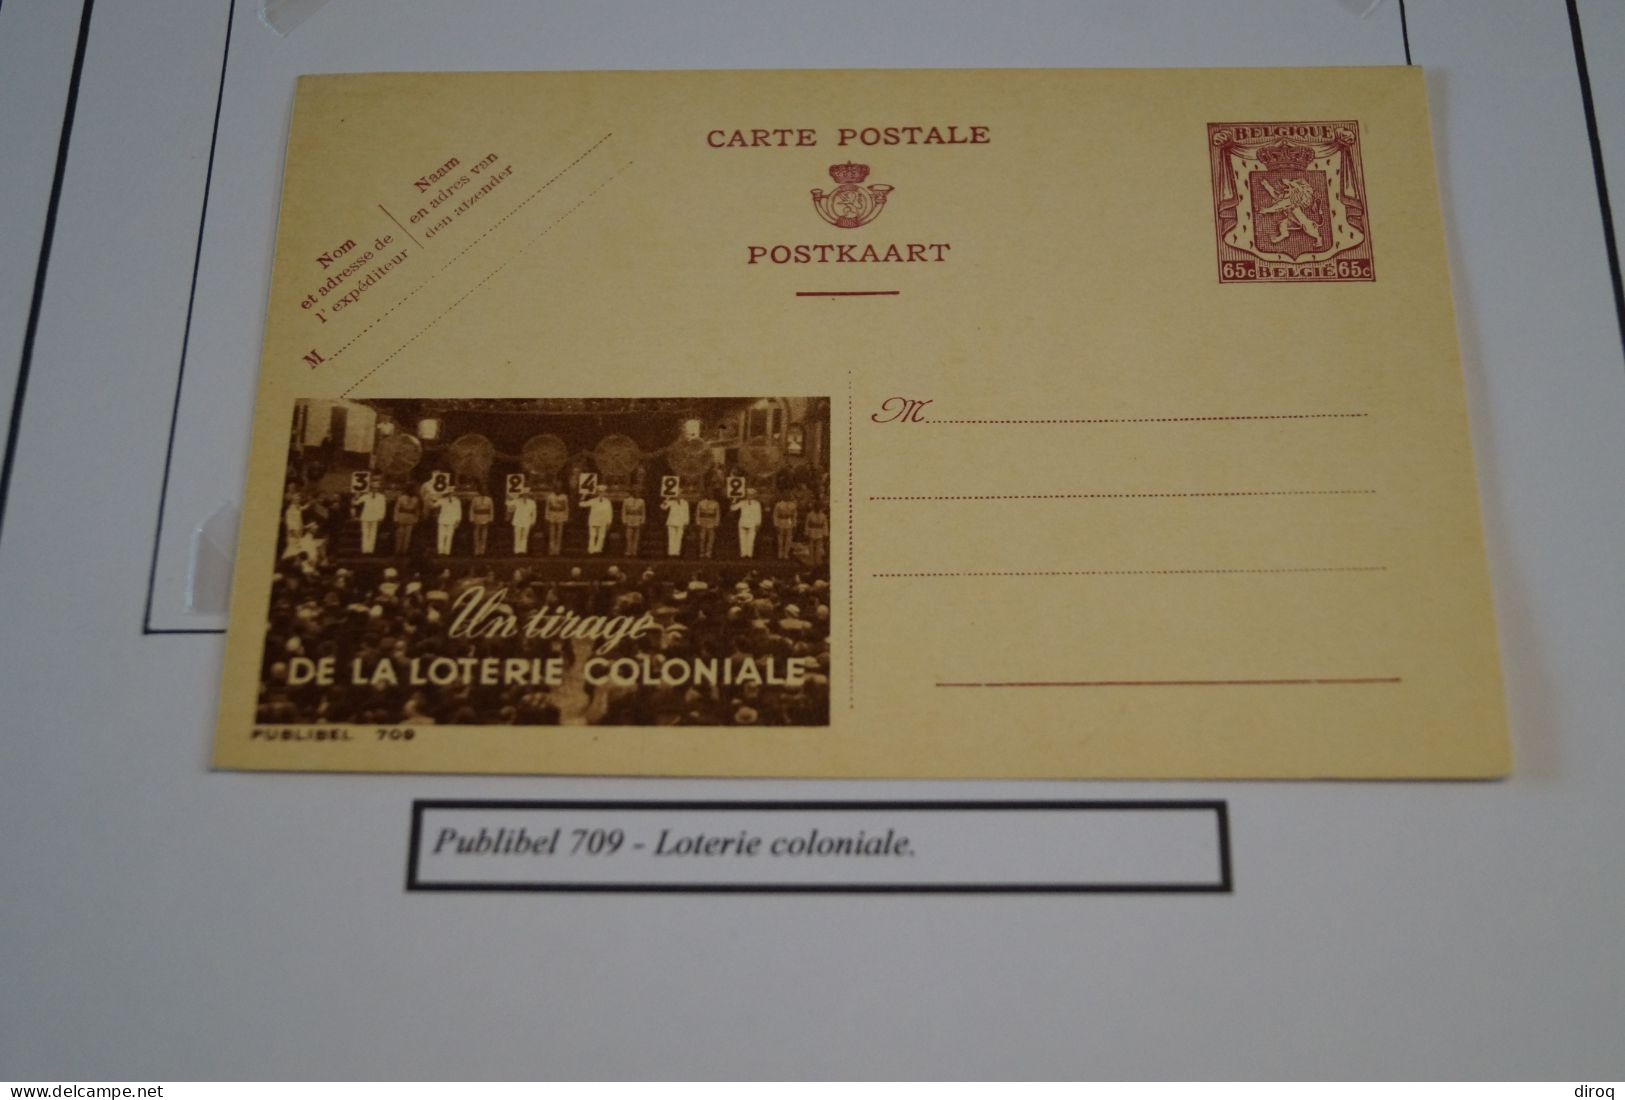 RARE 2 Cartes Publibel N° 709,Loterie Coloniale,1948,pour Collection - Billets De Loterie